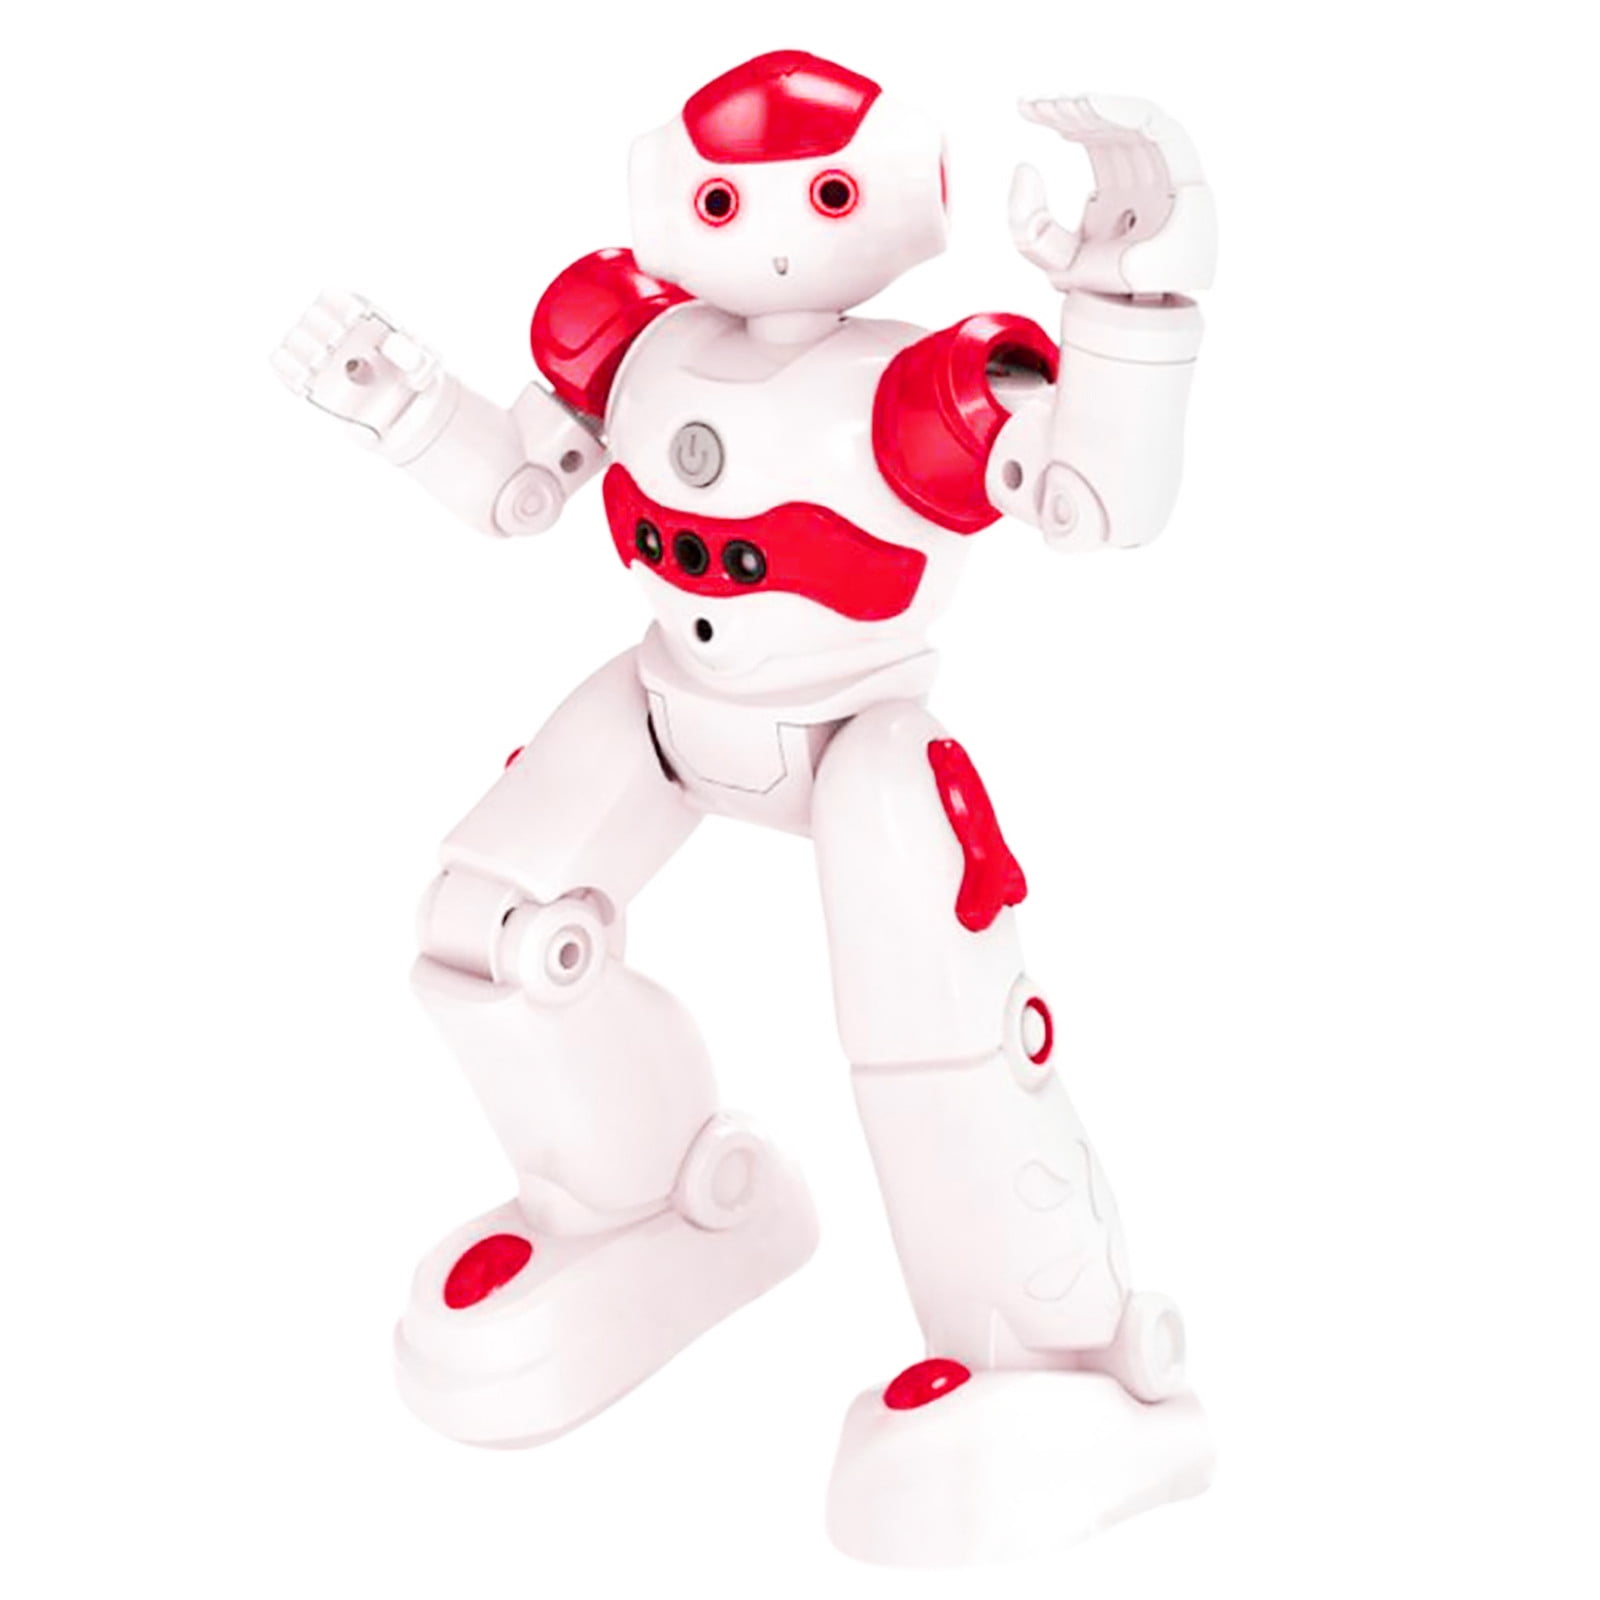 ANNI BAMBINI Programmable SMART Threeking RC Robot giocattolo robot Regalo per 8 